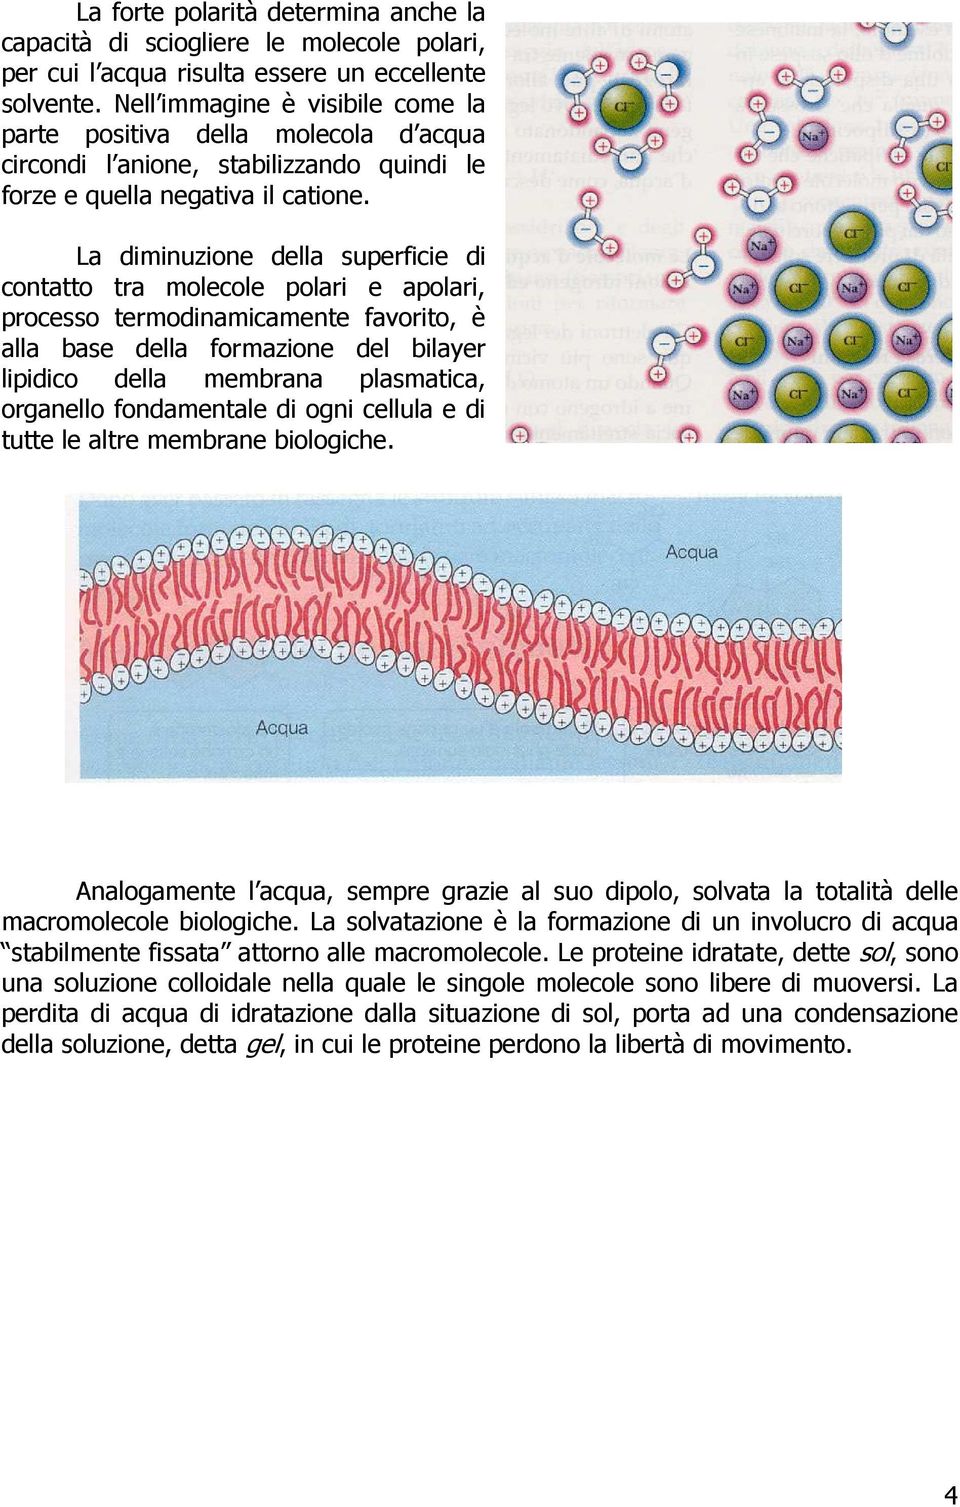 La diminuzione della superficie di contatto tra molecole polari e apolari, processo termodinamicamente favorito, è alla base della formazione del bilayer lipidico della membrana plasmatica, organello